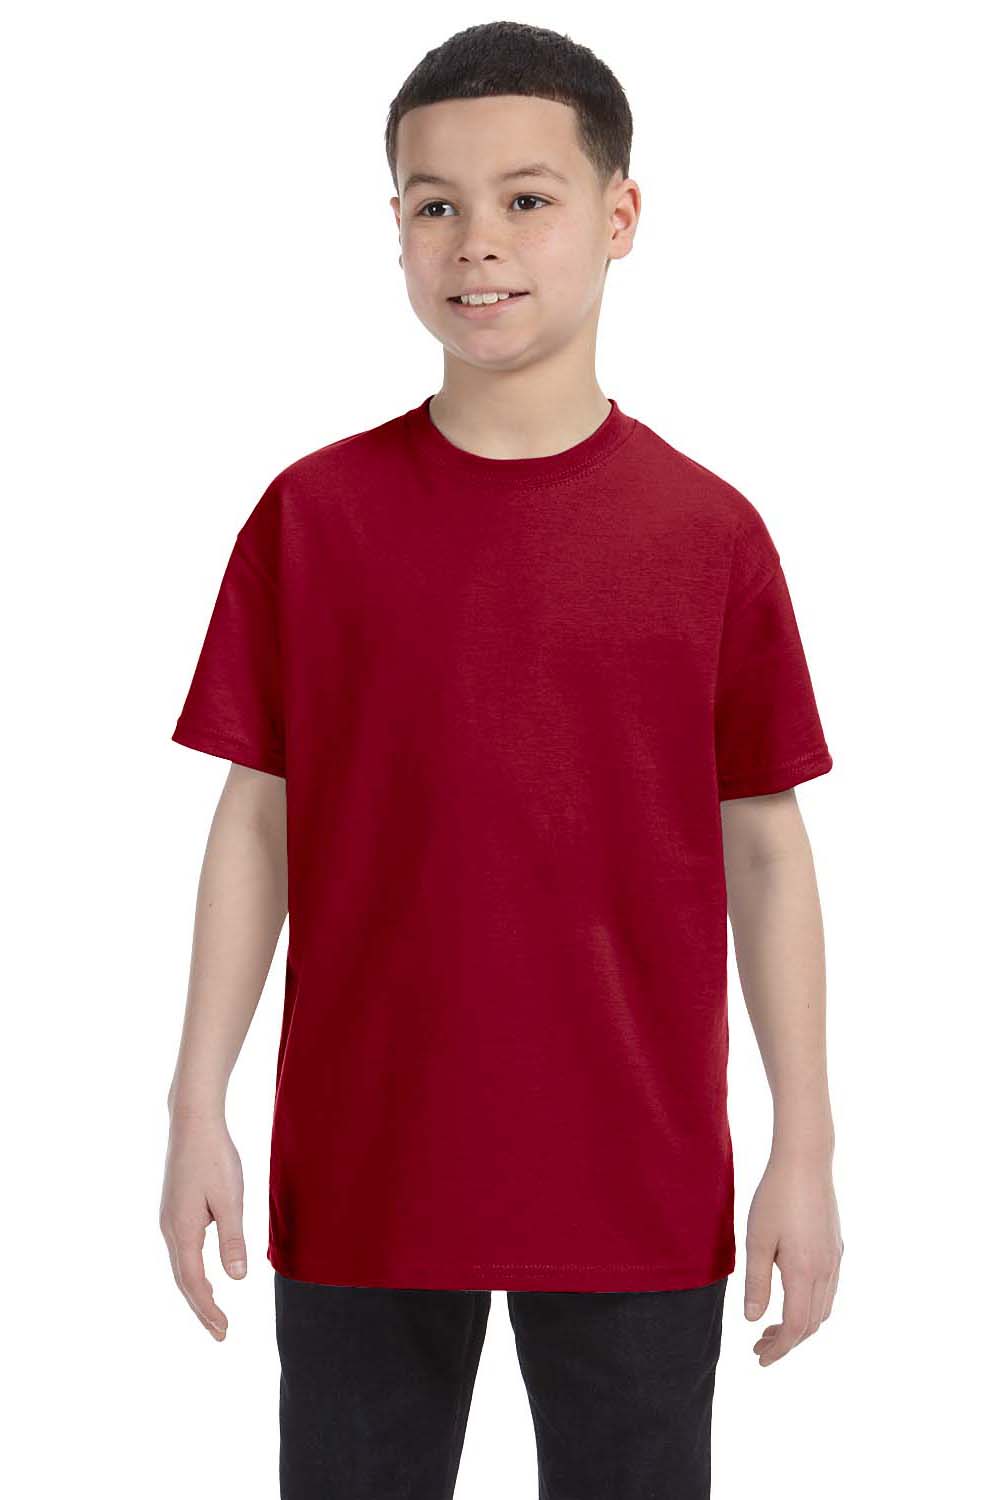 Gildan G500B Youth Short Sleeve Crewneck T-Shirt Cardinal Red Front